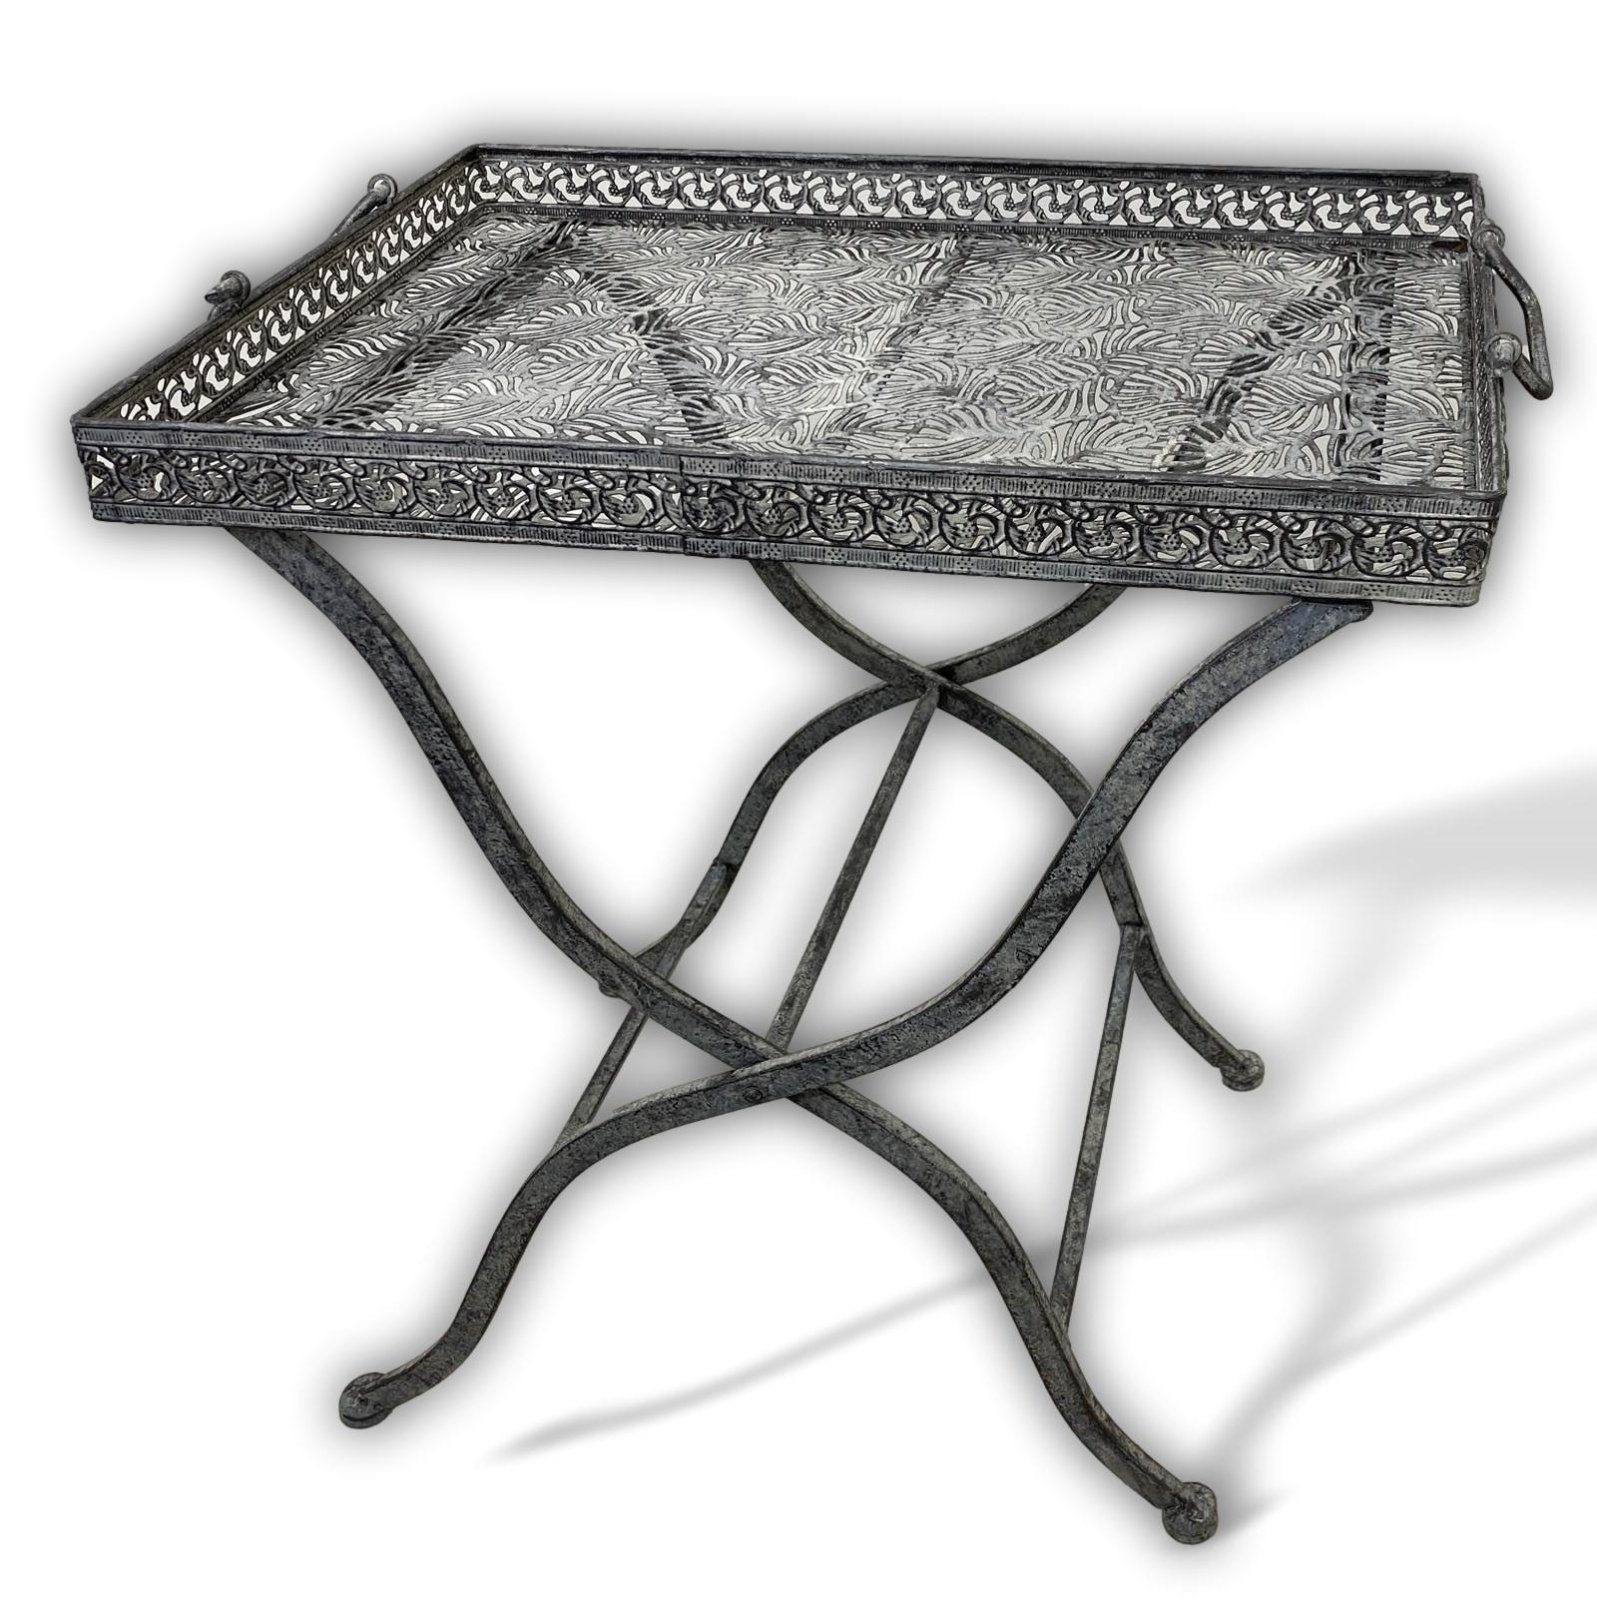 Aubaho Gartentisch Butlers Klapptisch Gartentisch tray Metall grau Serviertisch Ant Tisch